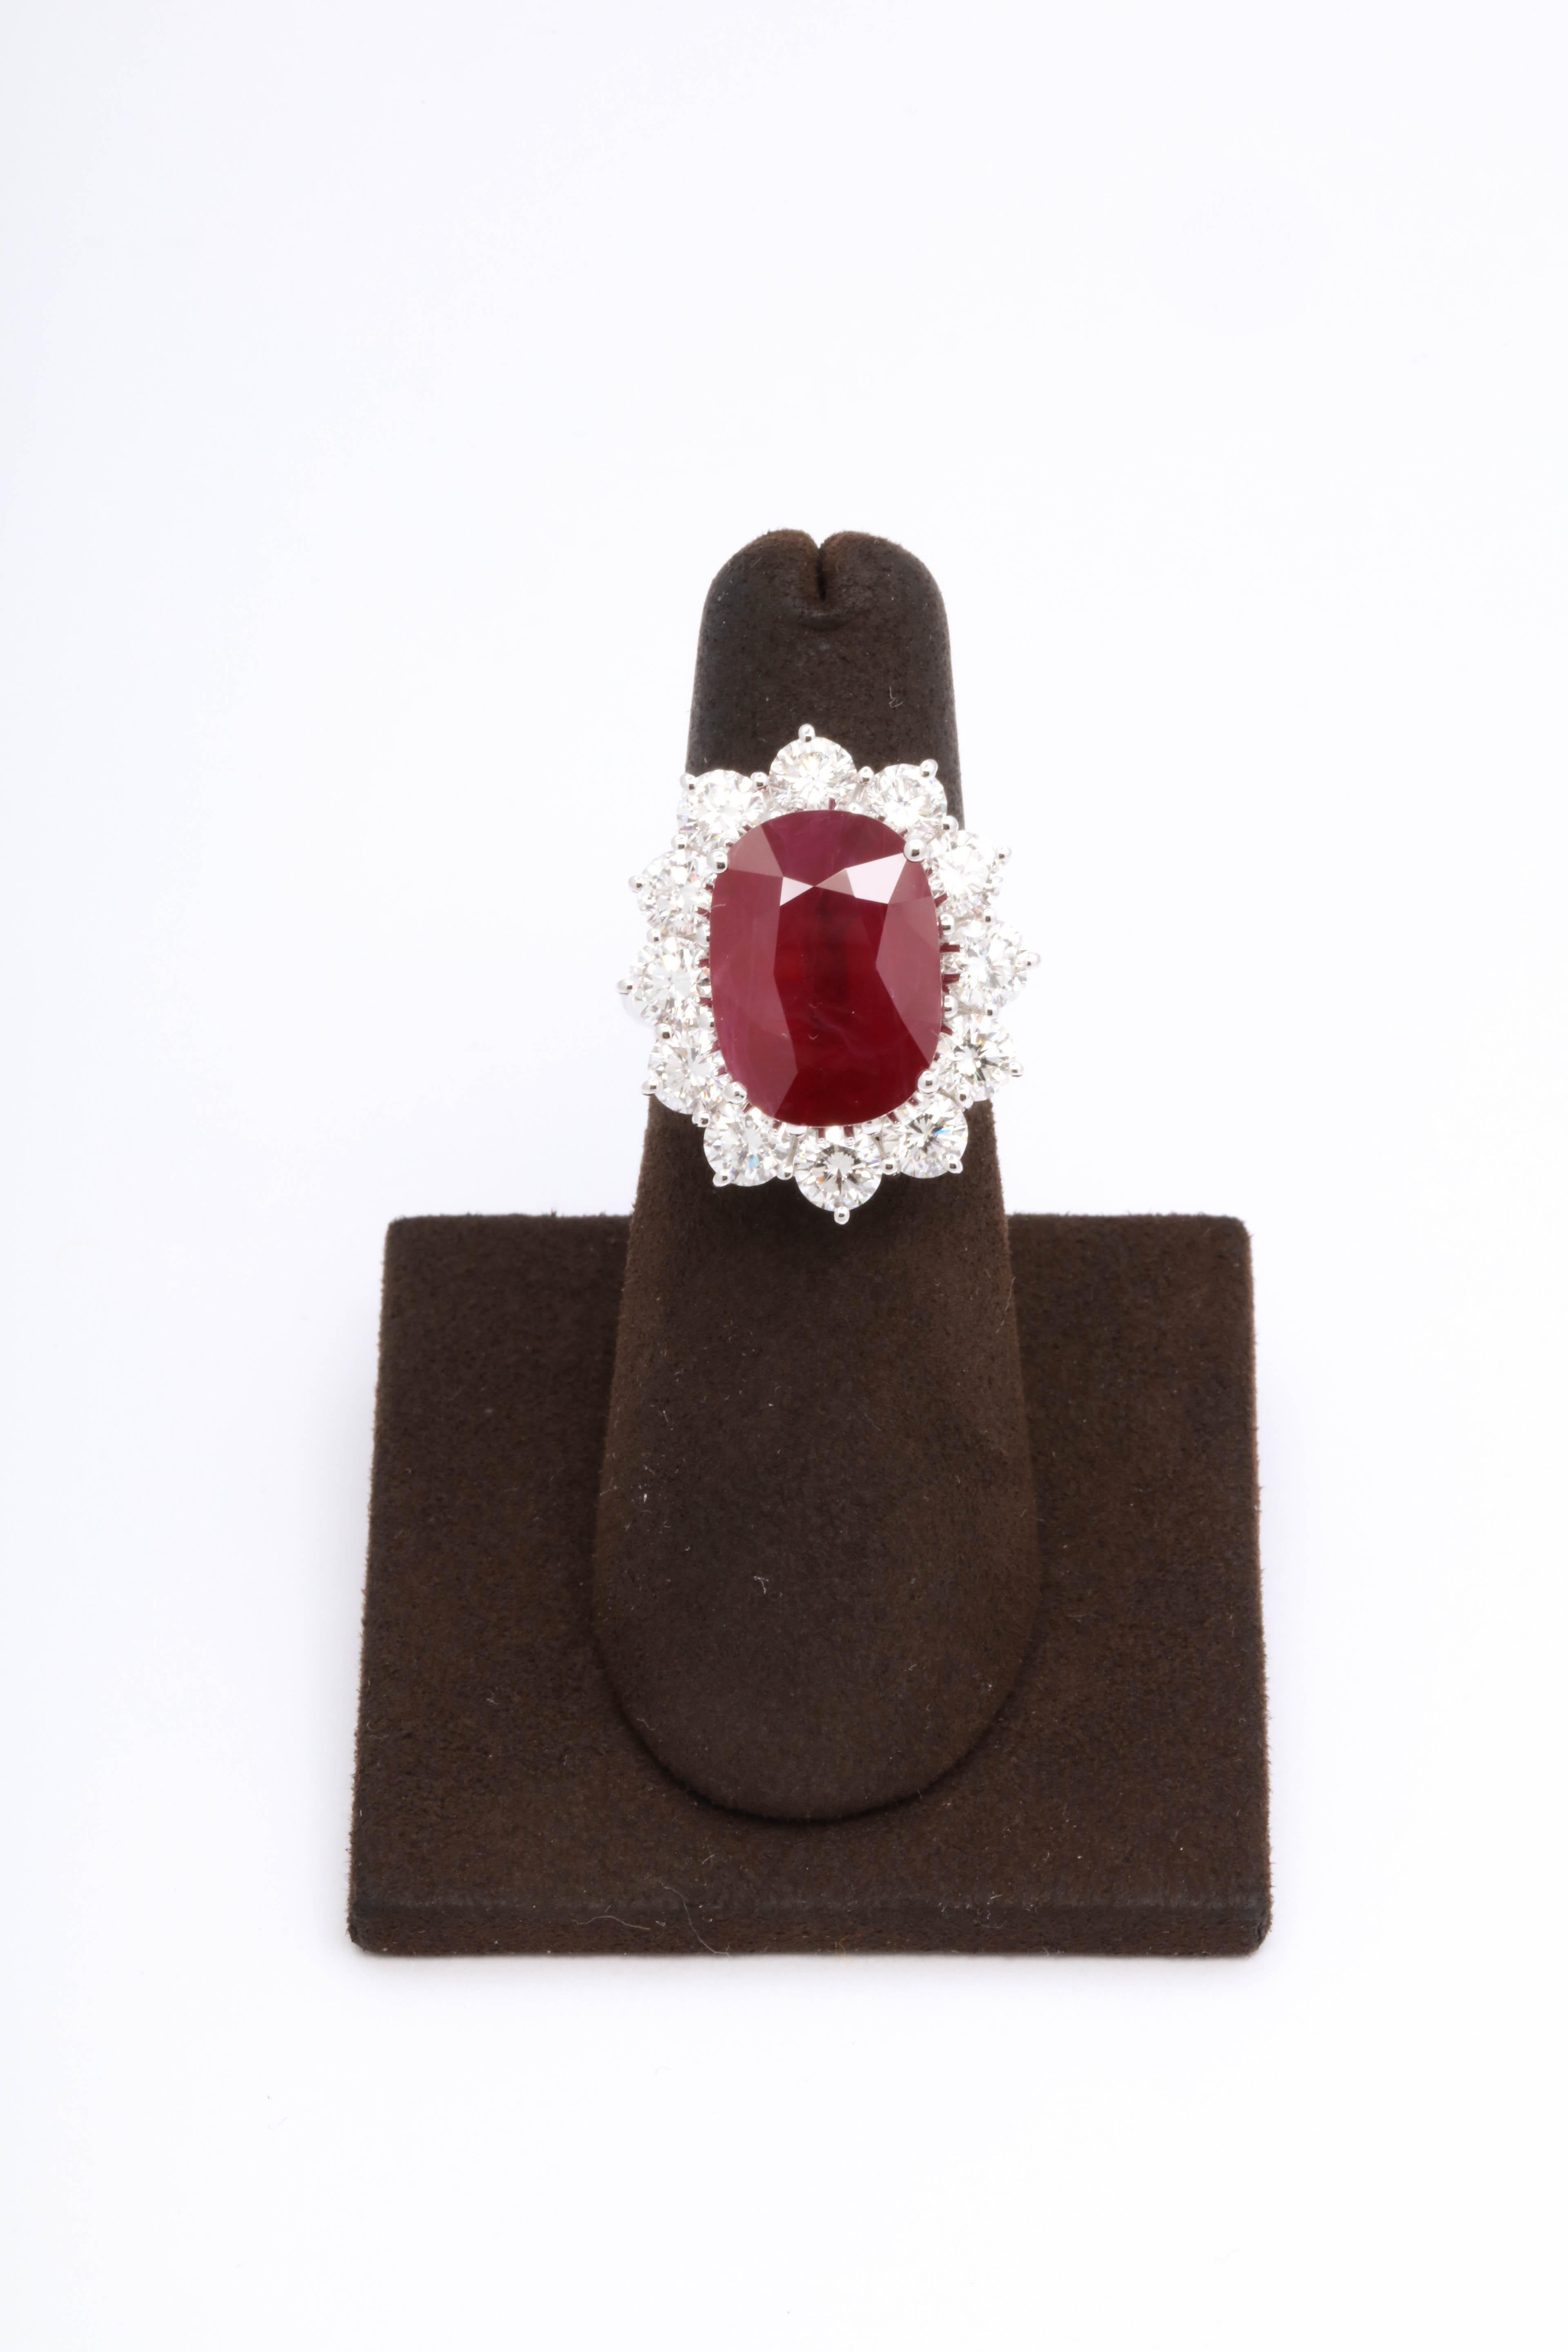 
Ein wahres Sammlerstück - hergestellt vom famosen italienischen Schmuckdesigner Damiani ist dieser Ring SPECTACULAR! 

Wunderschöner 9,11 Karat feiner Burma-Rubin, umgeben von 3,60 Karat weißen Diamanten im Brillantschliff, gefasst in 18 Karat